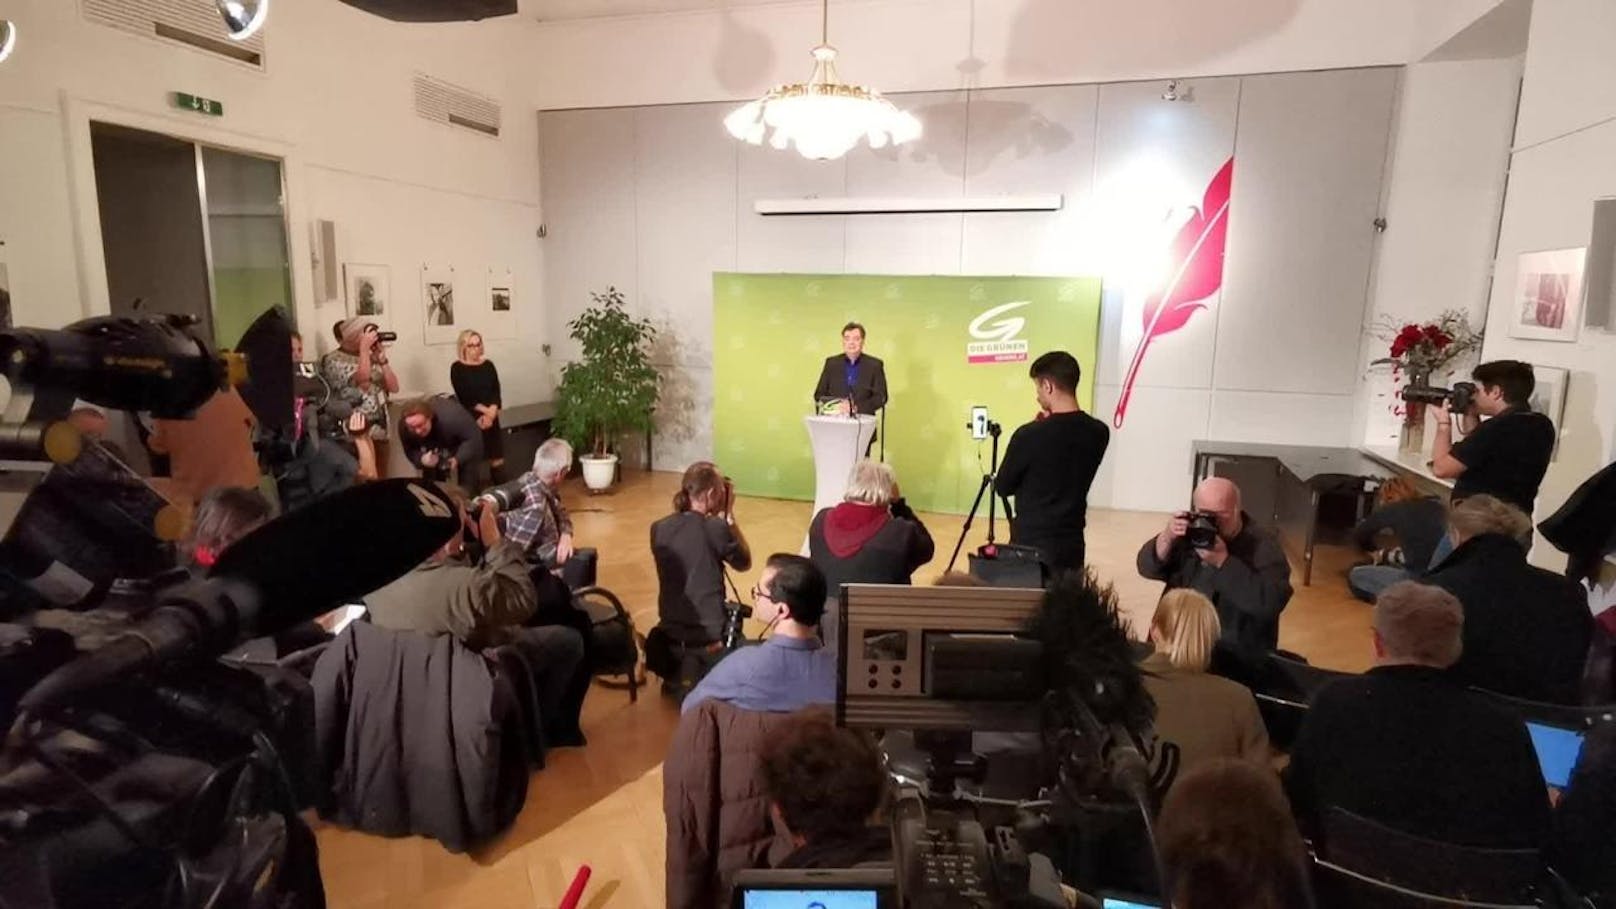 Die Grünen sagen "Ja" zu Koalitionsverhandlungen. Das gab Bundessprecher Werner Kogler am Sonntag in Wien bekannt.